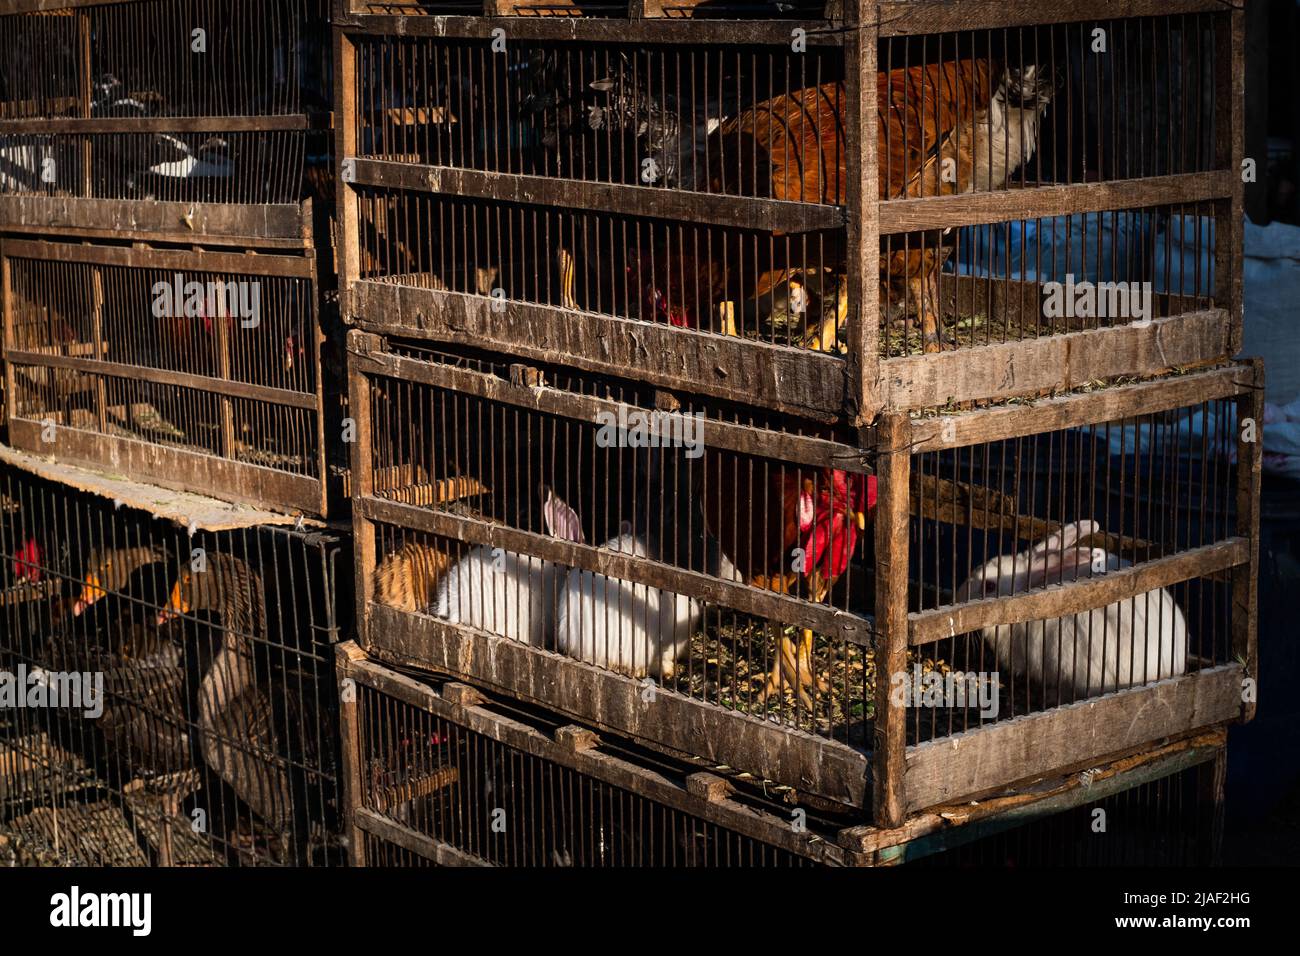 Animales en jaulas en el mercado de la calle Foto de stock